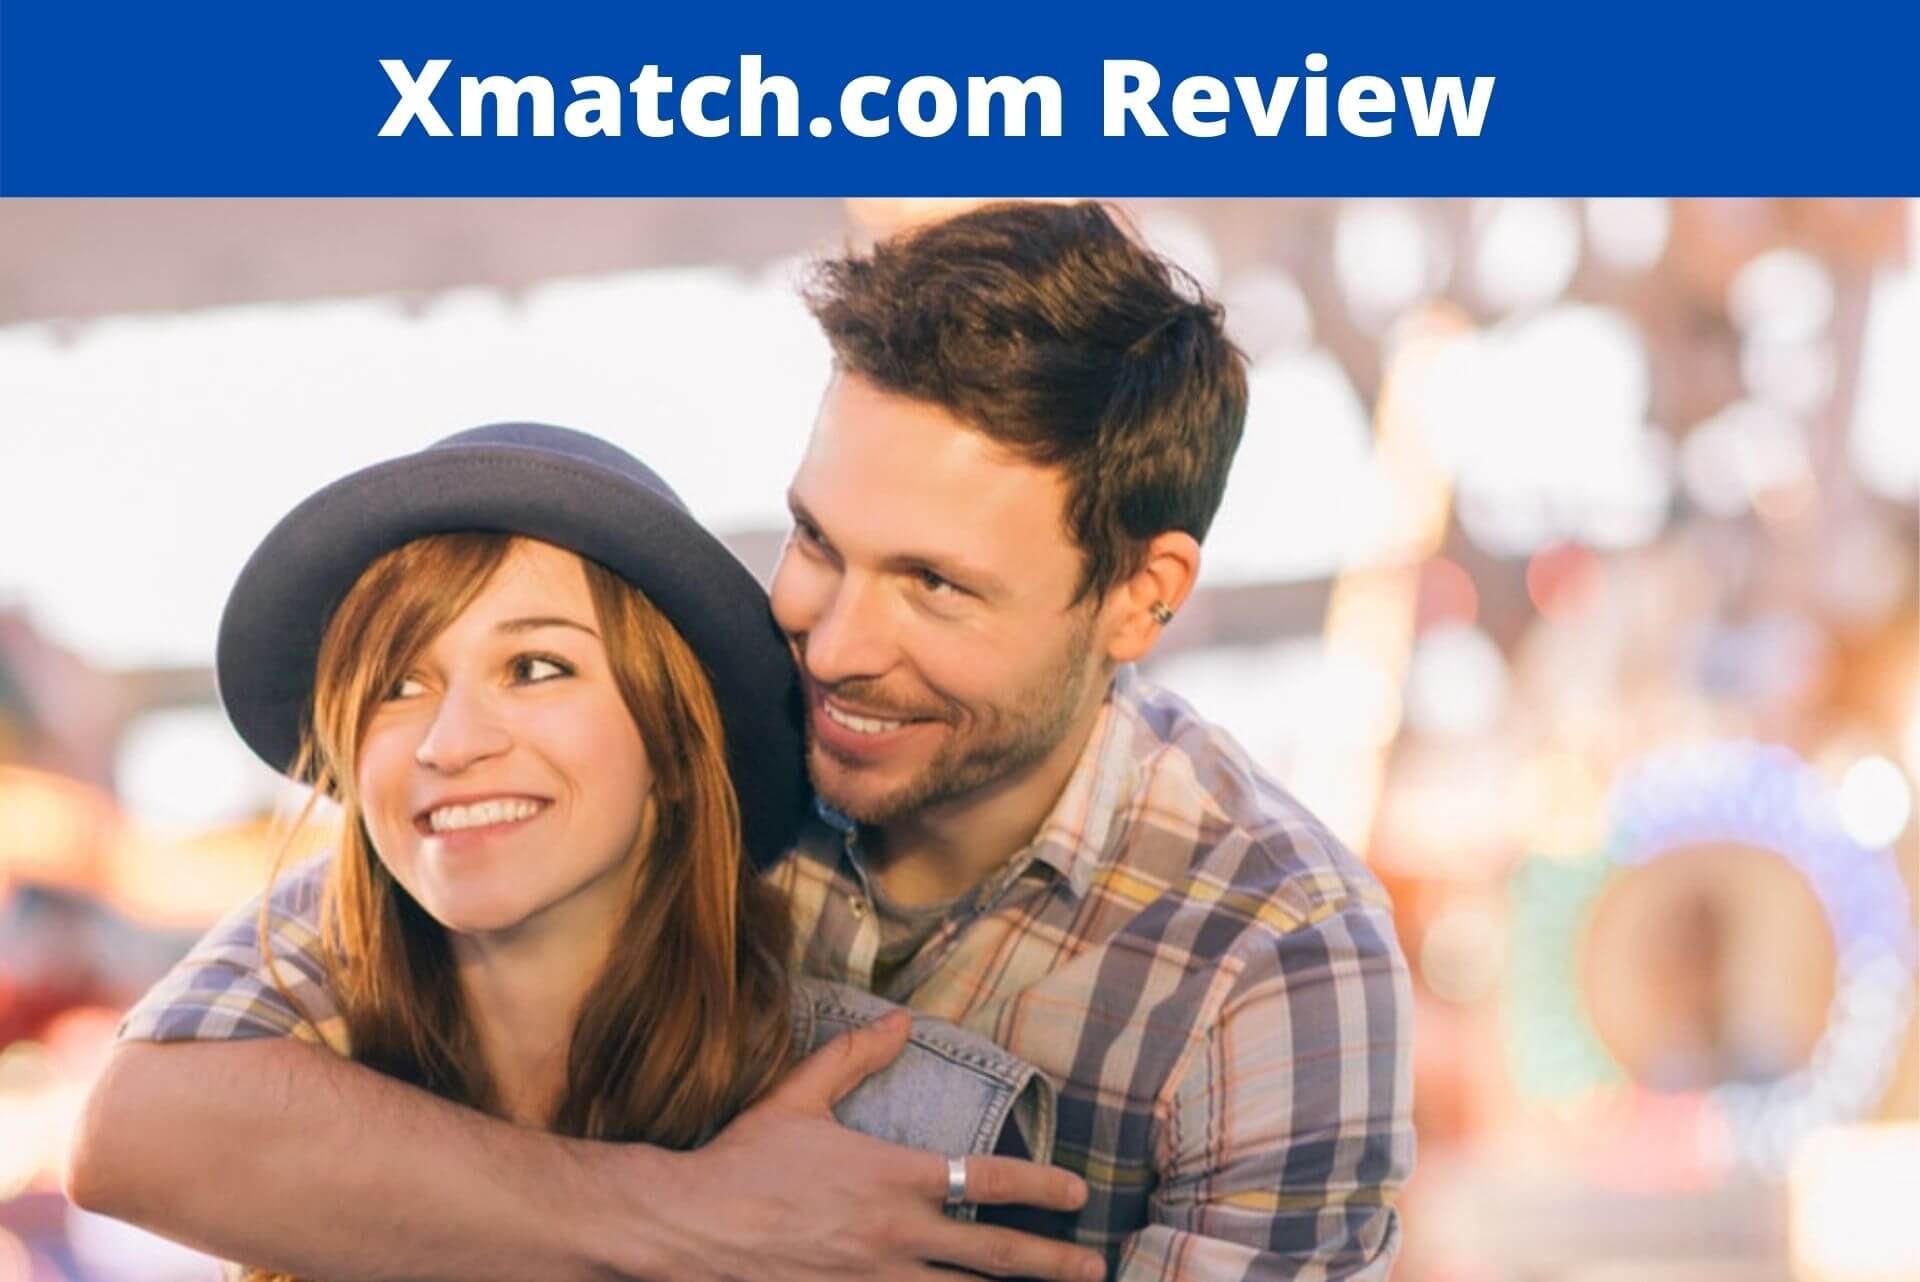 Xmatch.com Review